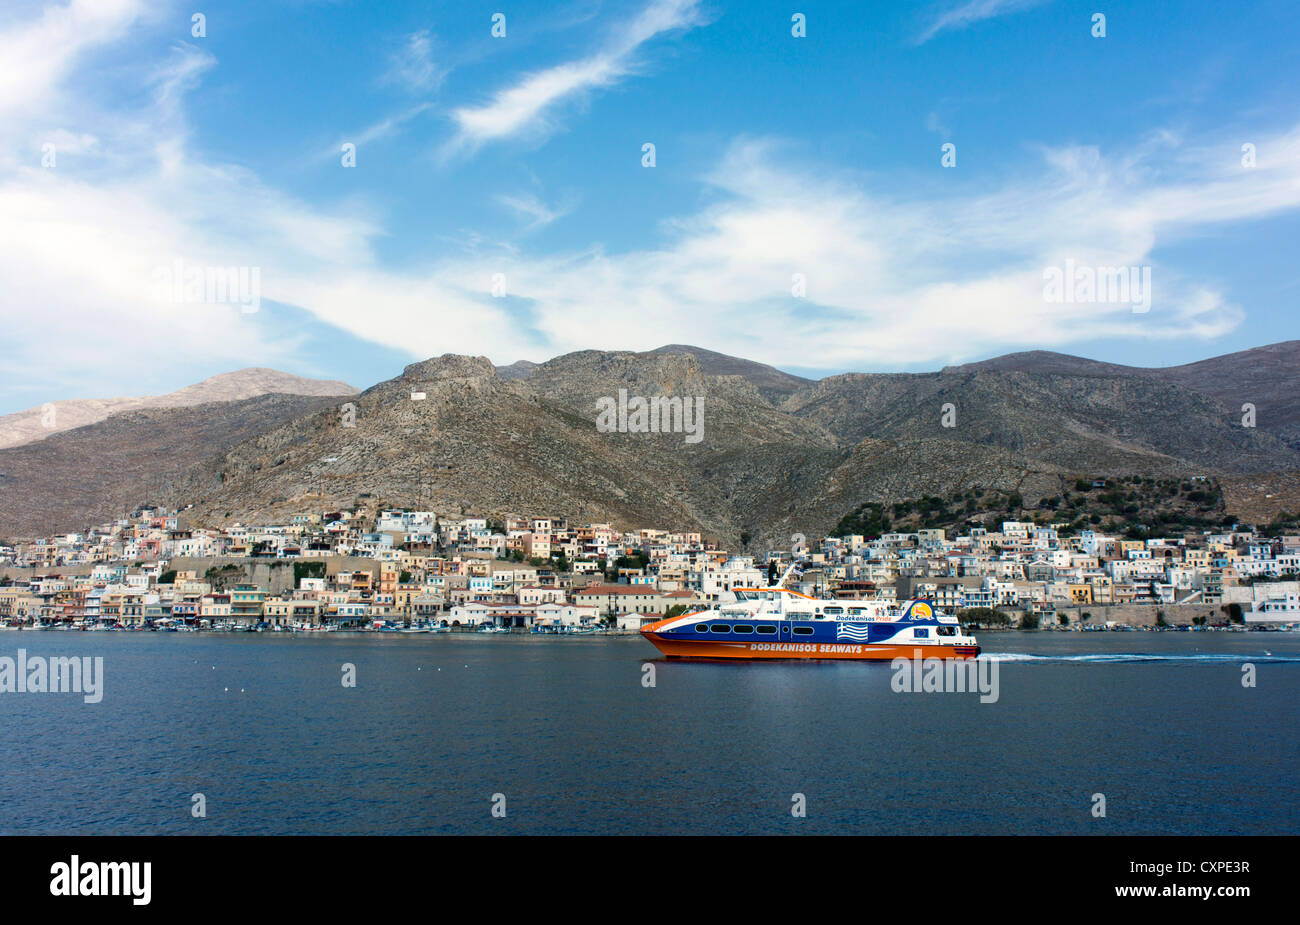 Fähre und Pothia Stadt, Kalymnos, griechische Insel, Dodekanes, Griechenland Stockfoto